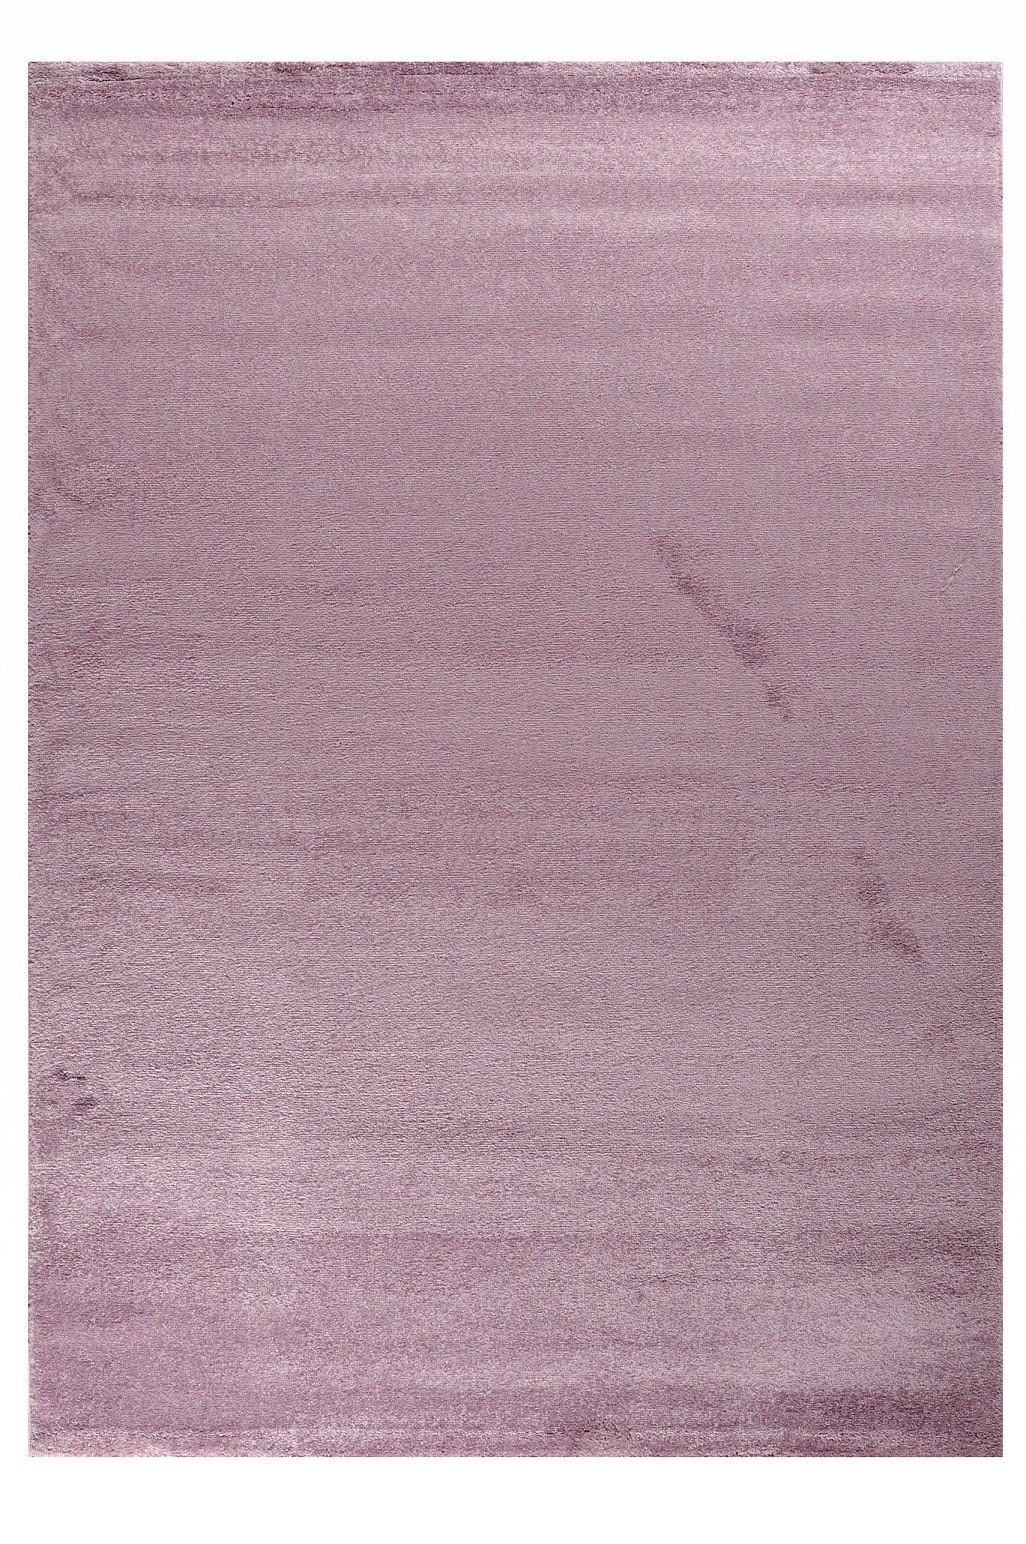 Πατάκι Μονόχρωμο Silence 20153 by Tzikas carpets